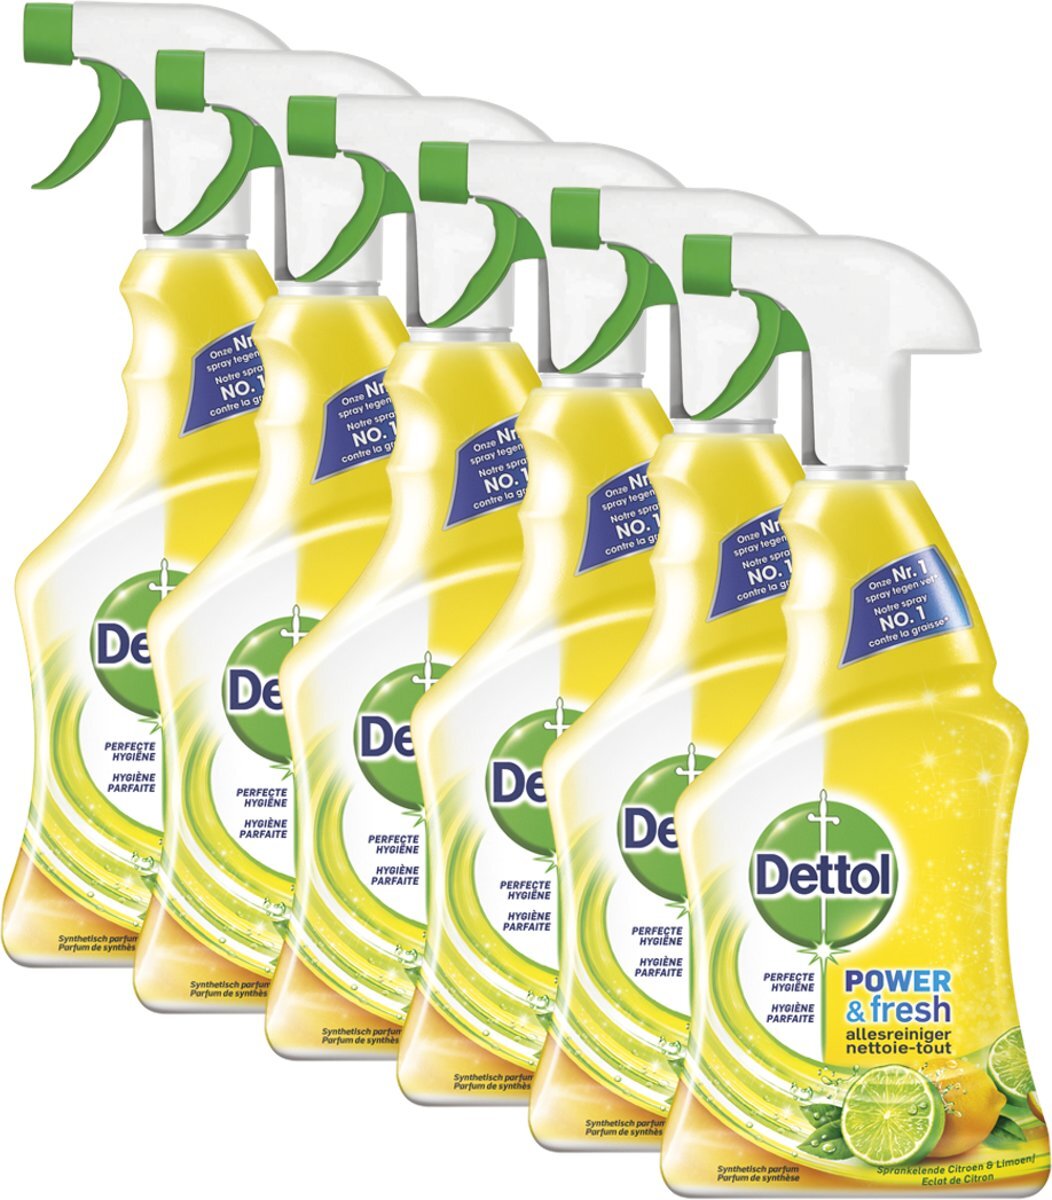 Dettol Allesreiniger Spray Citroen & Limoen - 6 x 500 ml - Grootverpakking